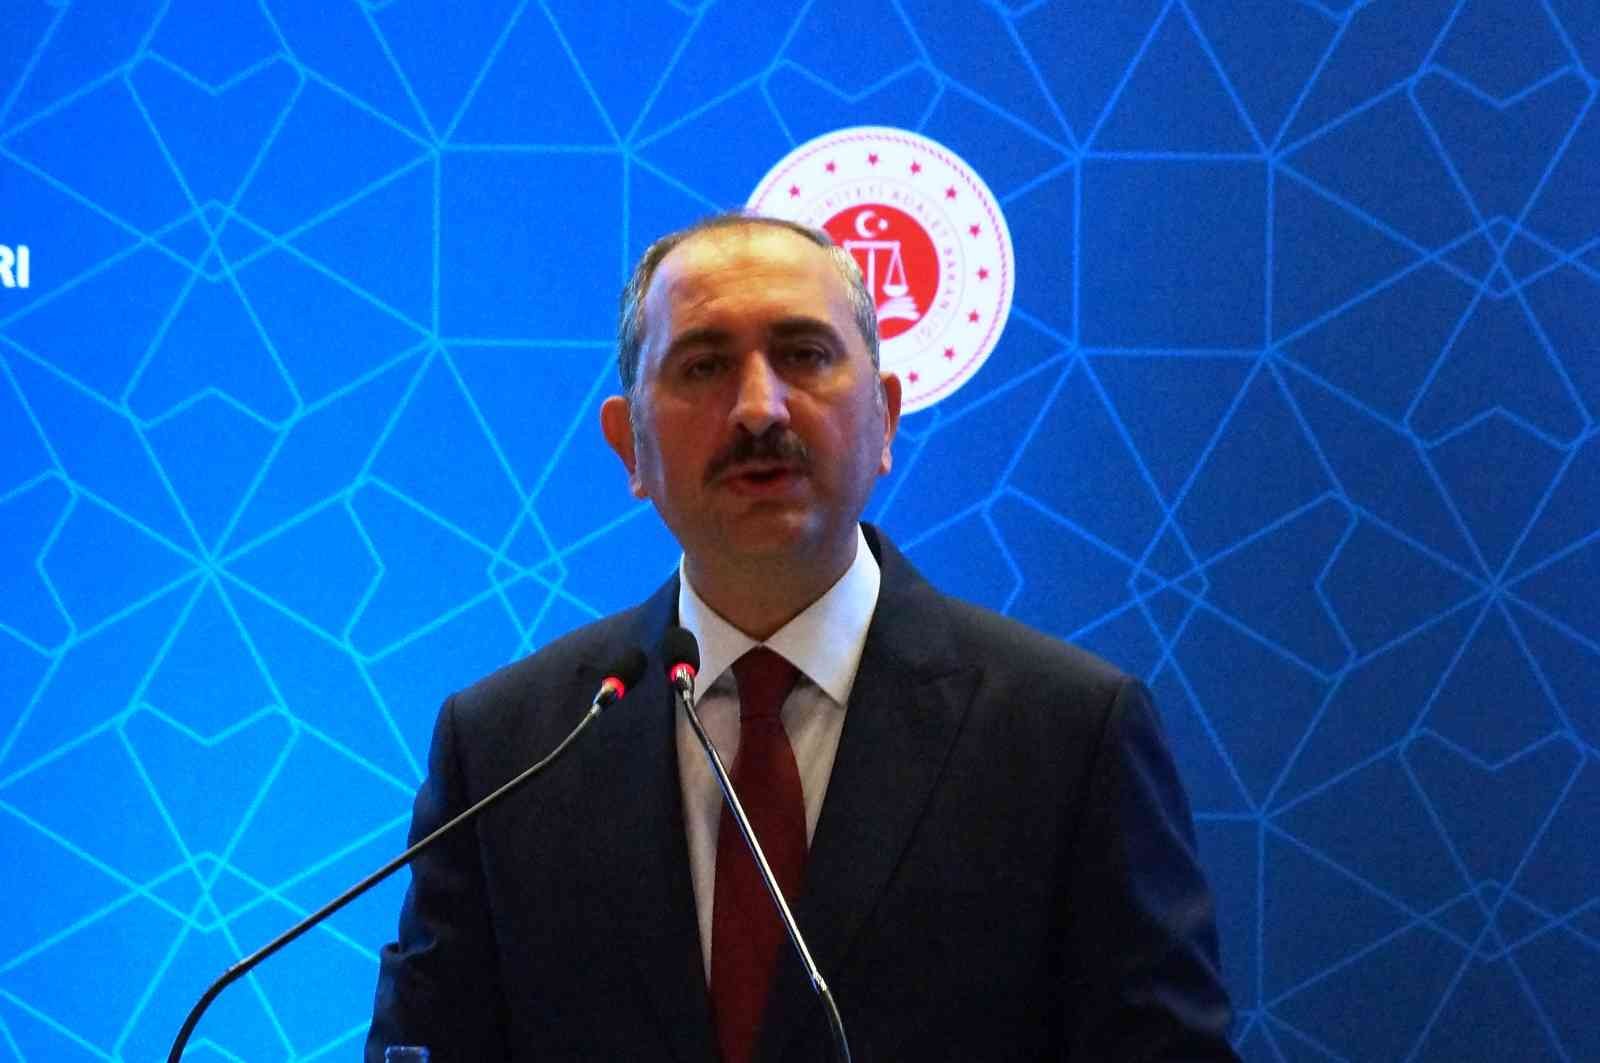 Adalet Bakanı Gül: “Eski Türkiye’de hukukun eline çekiç verdiler, herkesi çivi gibi gördü” #aydin